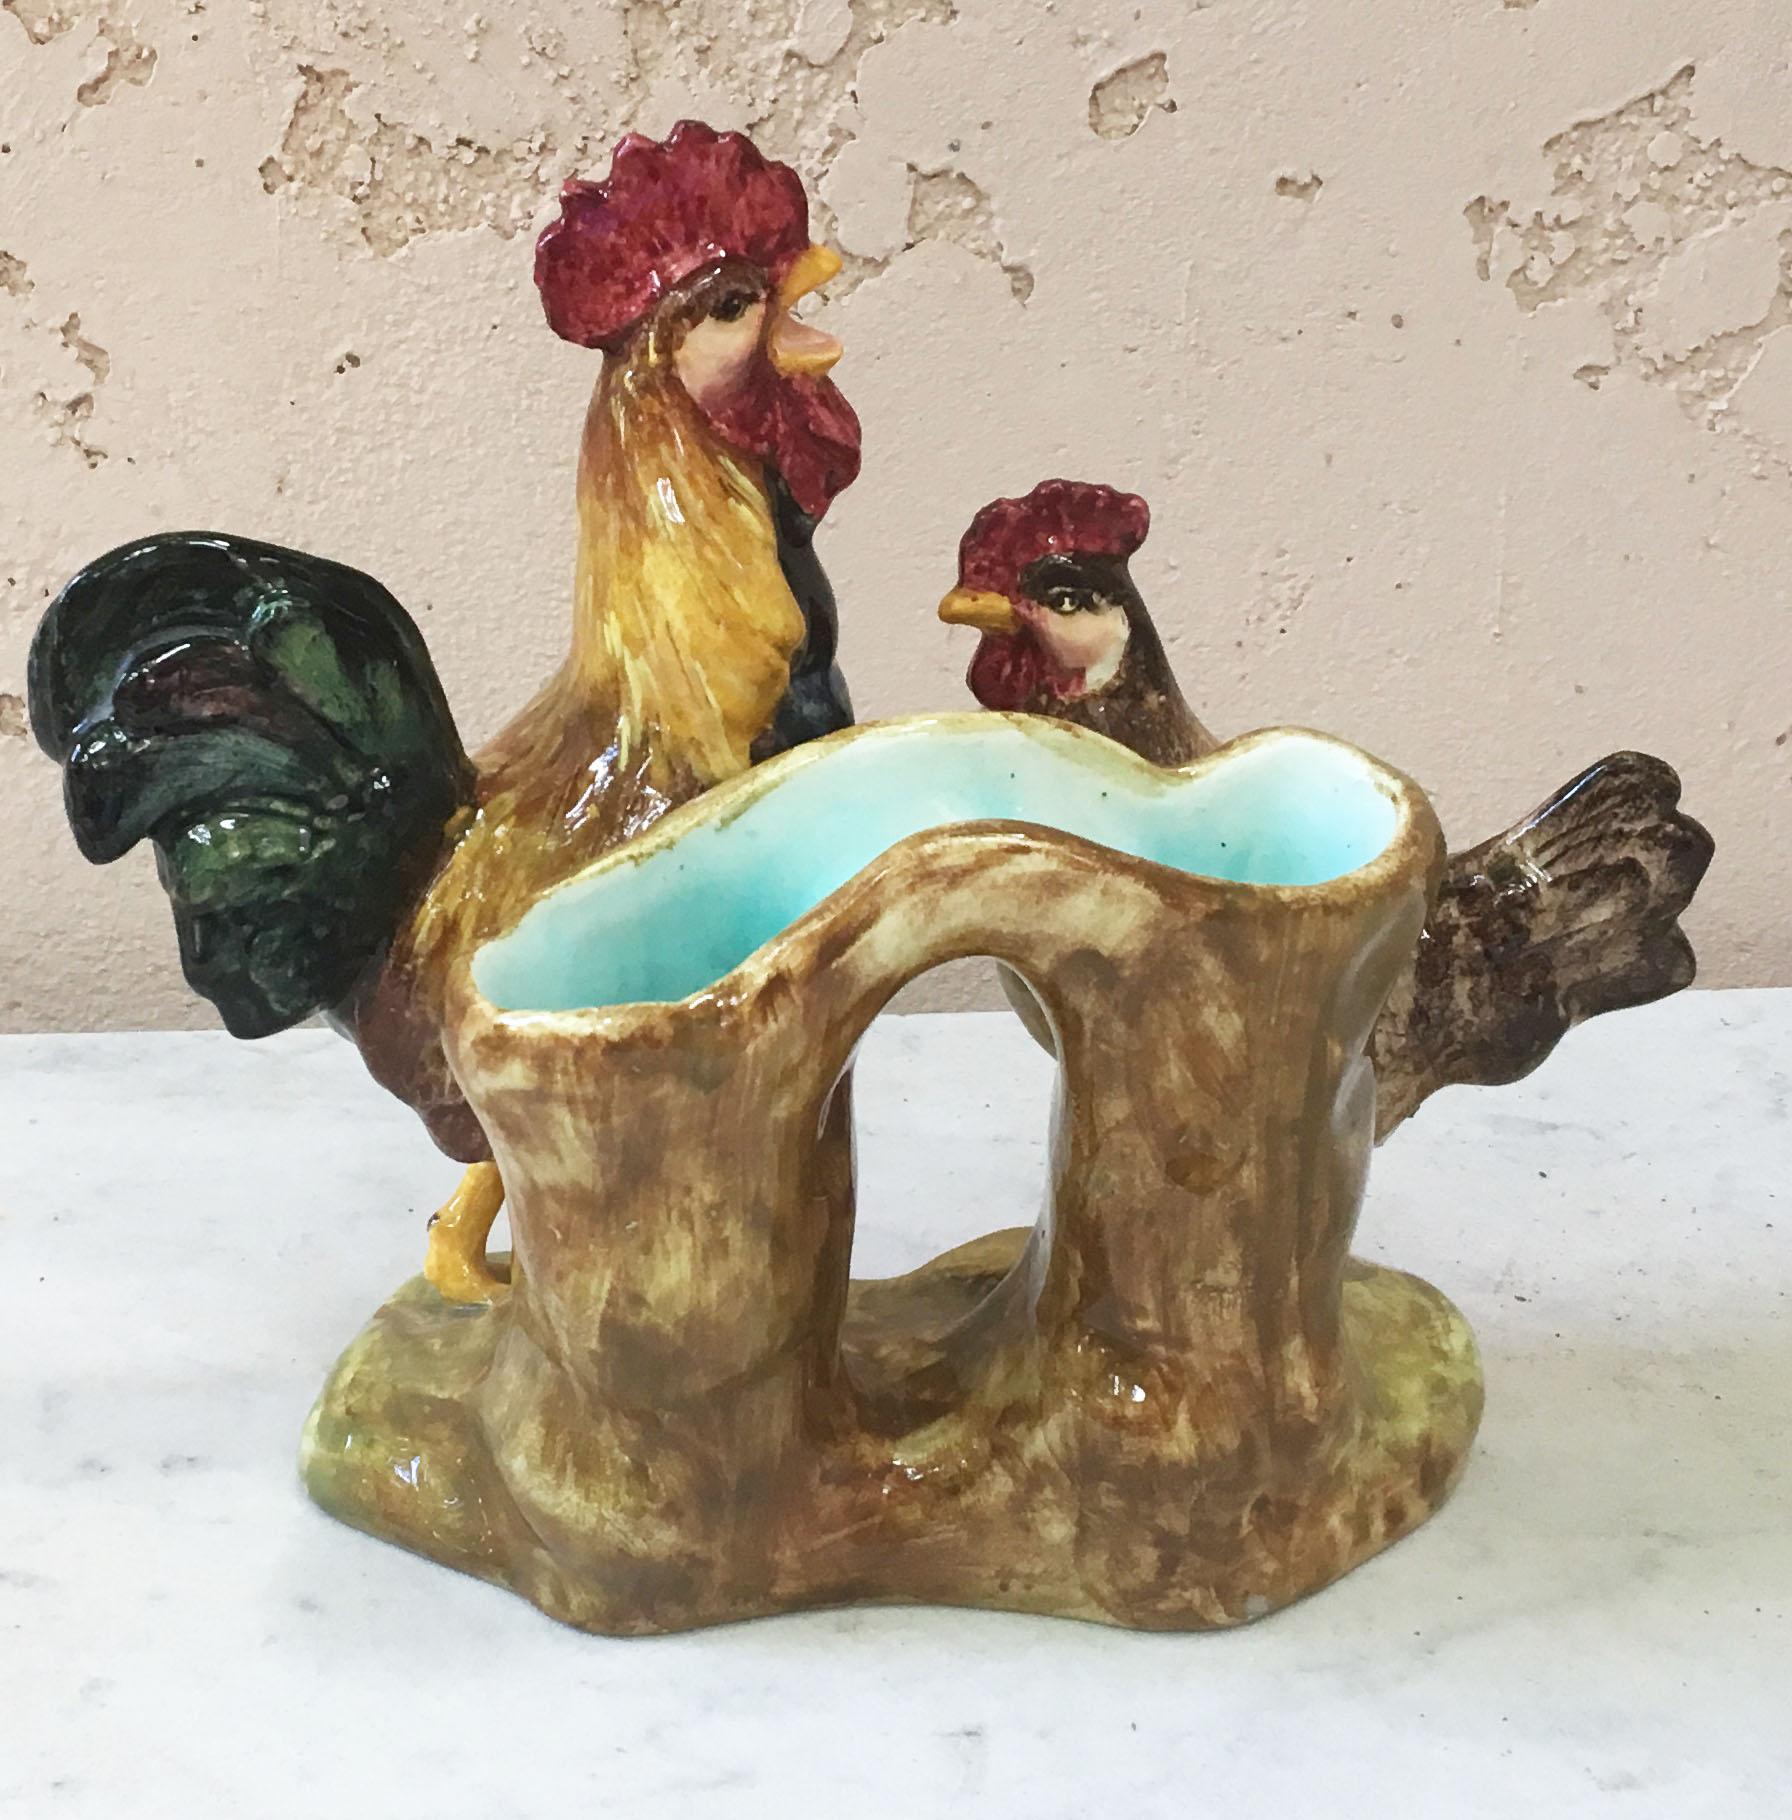 Charmante Majolika-Vase mit einem Hahn und einer Henne vor einem Baumstamm, signiert Delphin Massier, um 1890.
Referenz / Ein ähnliches Beispiel dieses Stückes Seite 83 